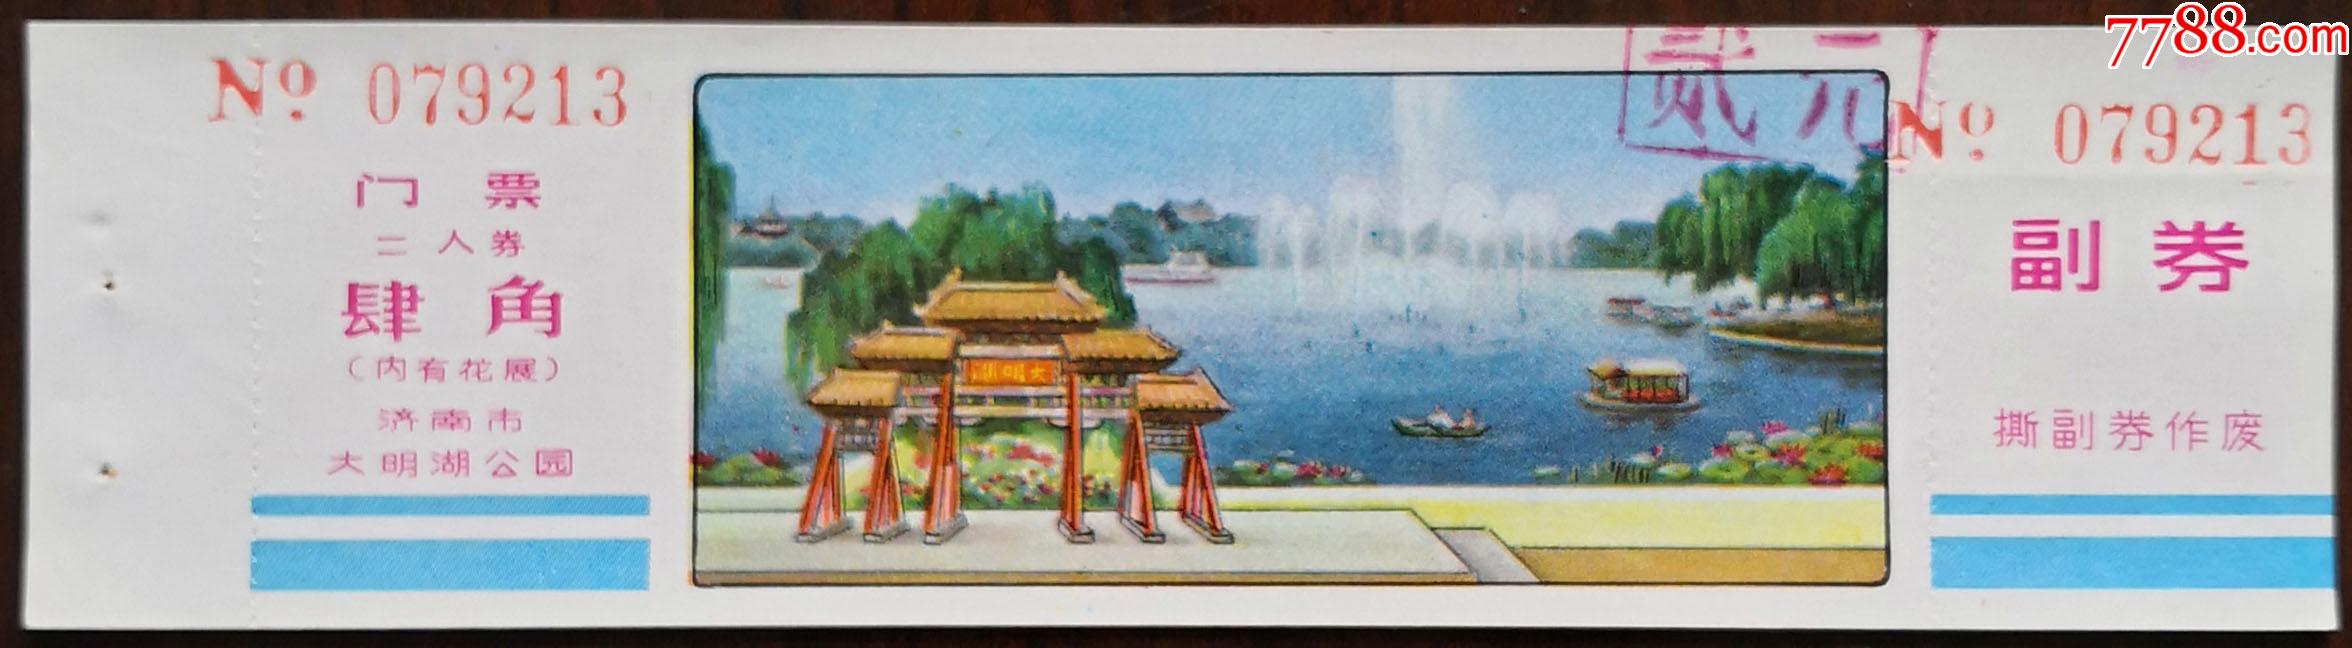 济南大明湖公园早期绘画二人券